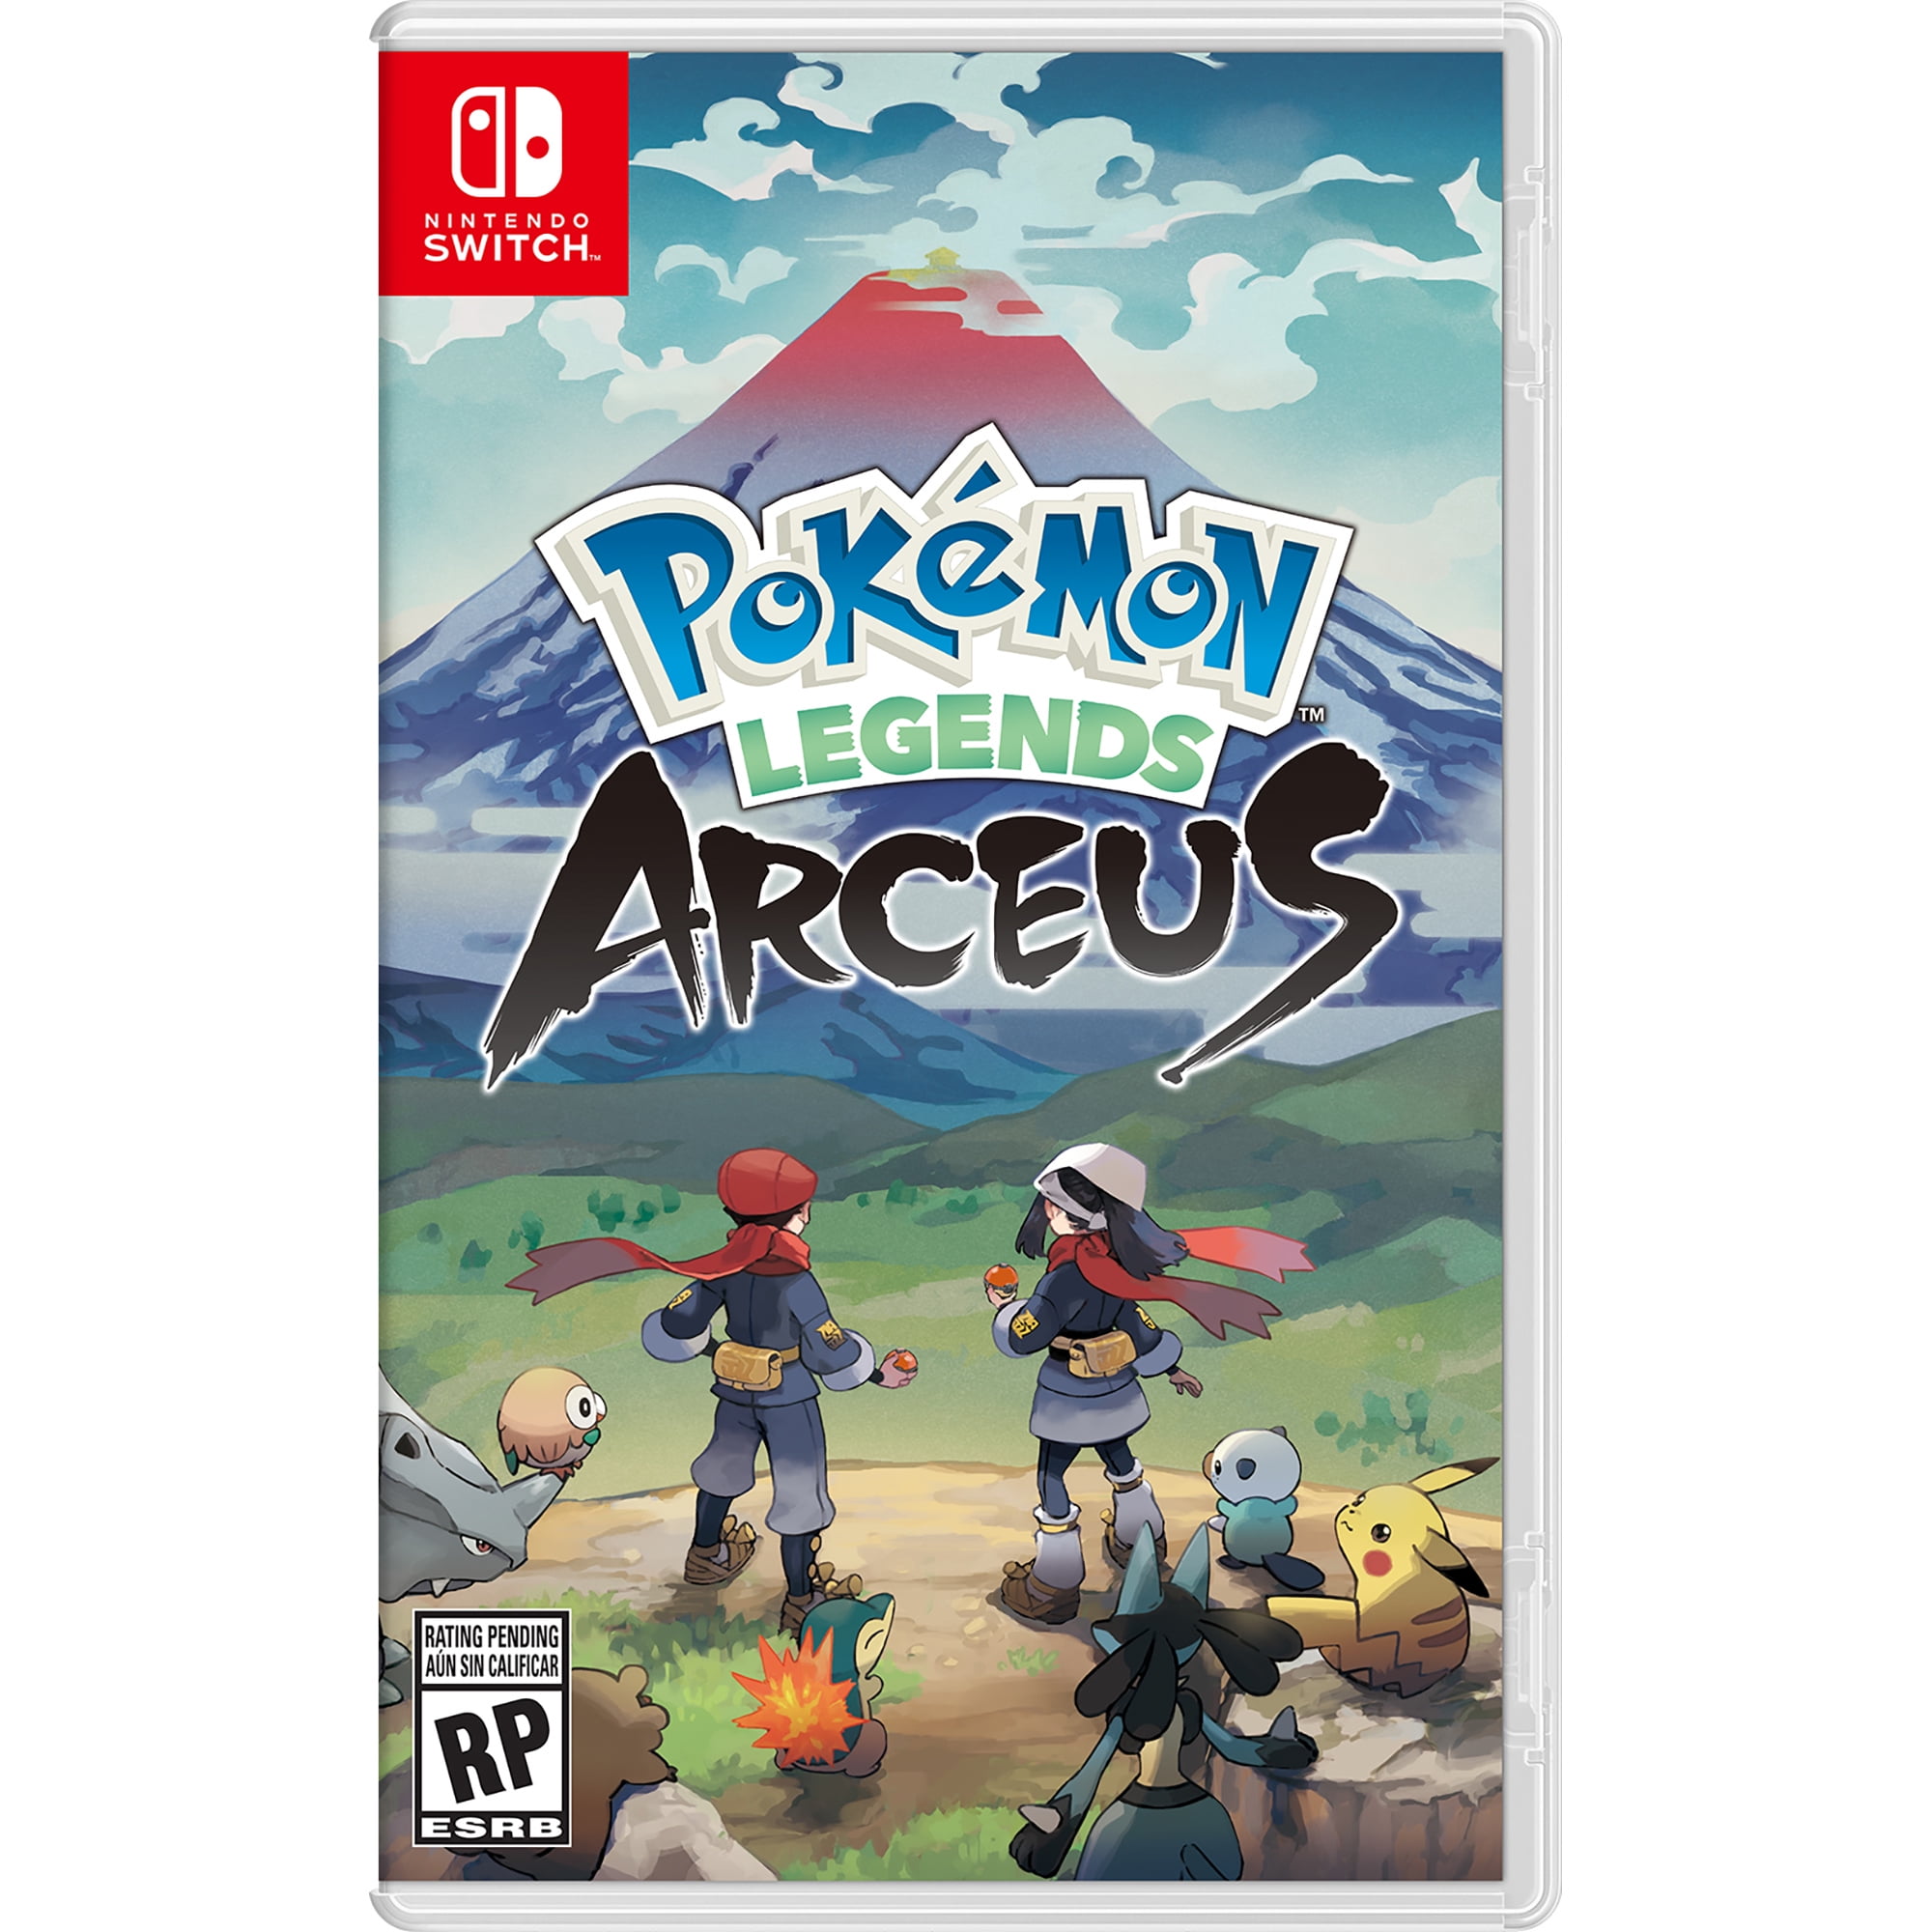 Pokemon Legends: Arceus details Sword and Shield, Let's Go bonuses